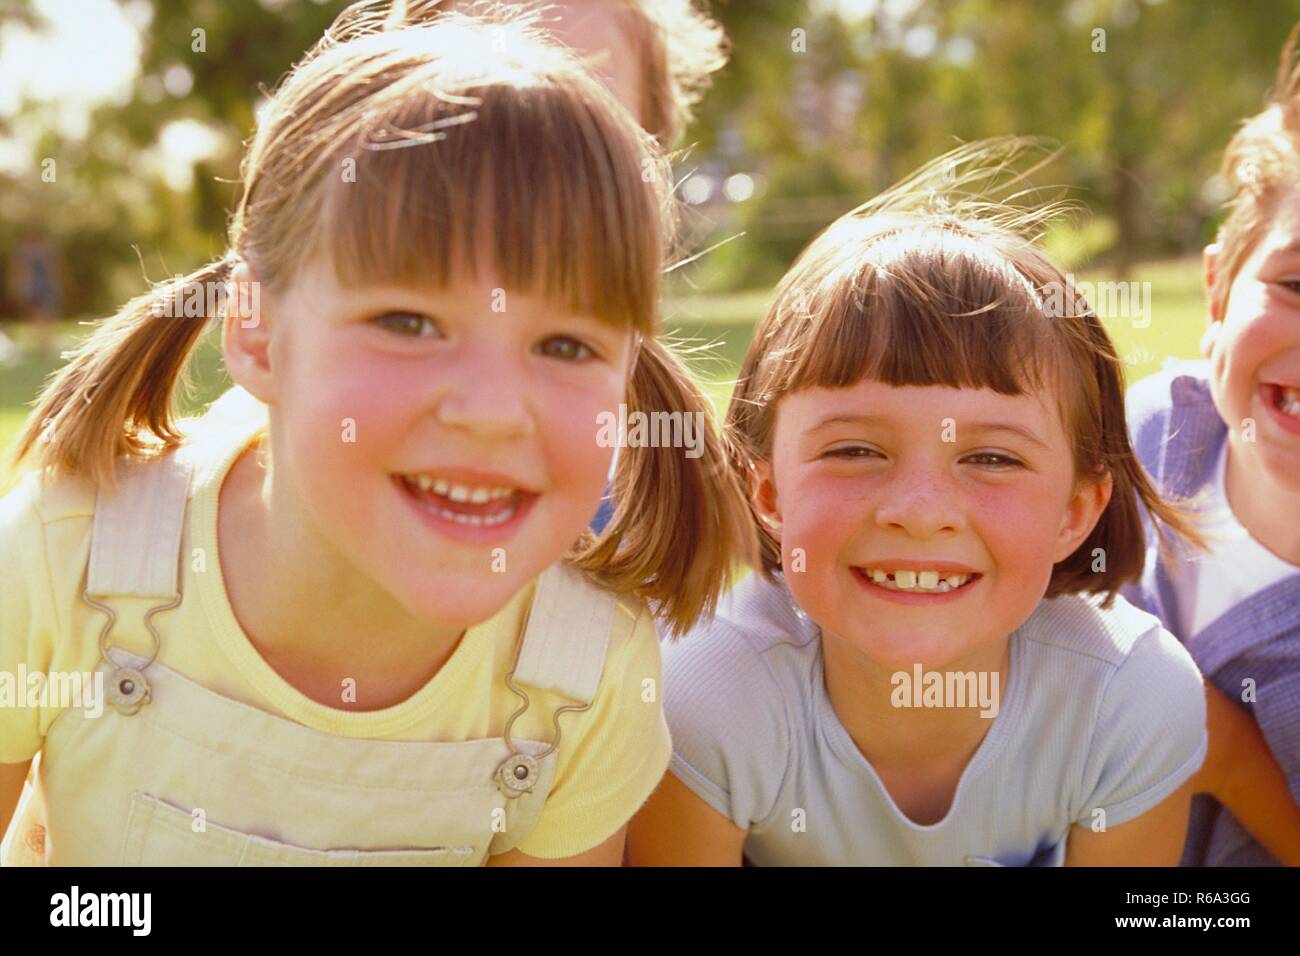 Parkszene, Portrait, Nahaufnahme, 2 dunkelblonde Maedchen, 6 Jahre alt, bekleidet mit hellgelben und hellblauen T-Shirtszeigen ihre Zaehne Stock Photo